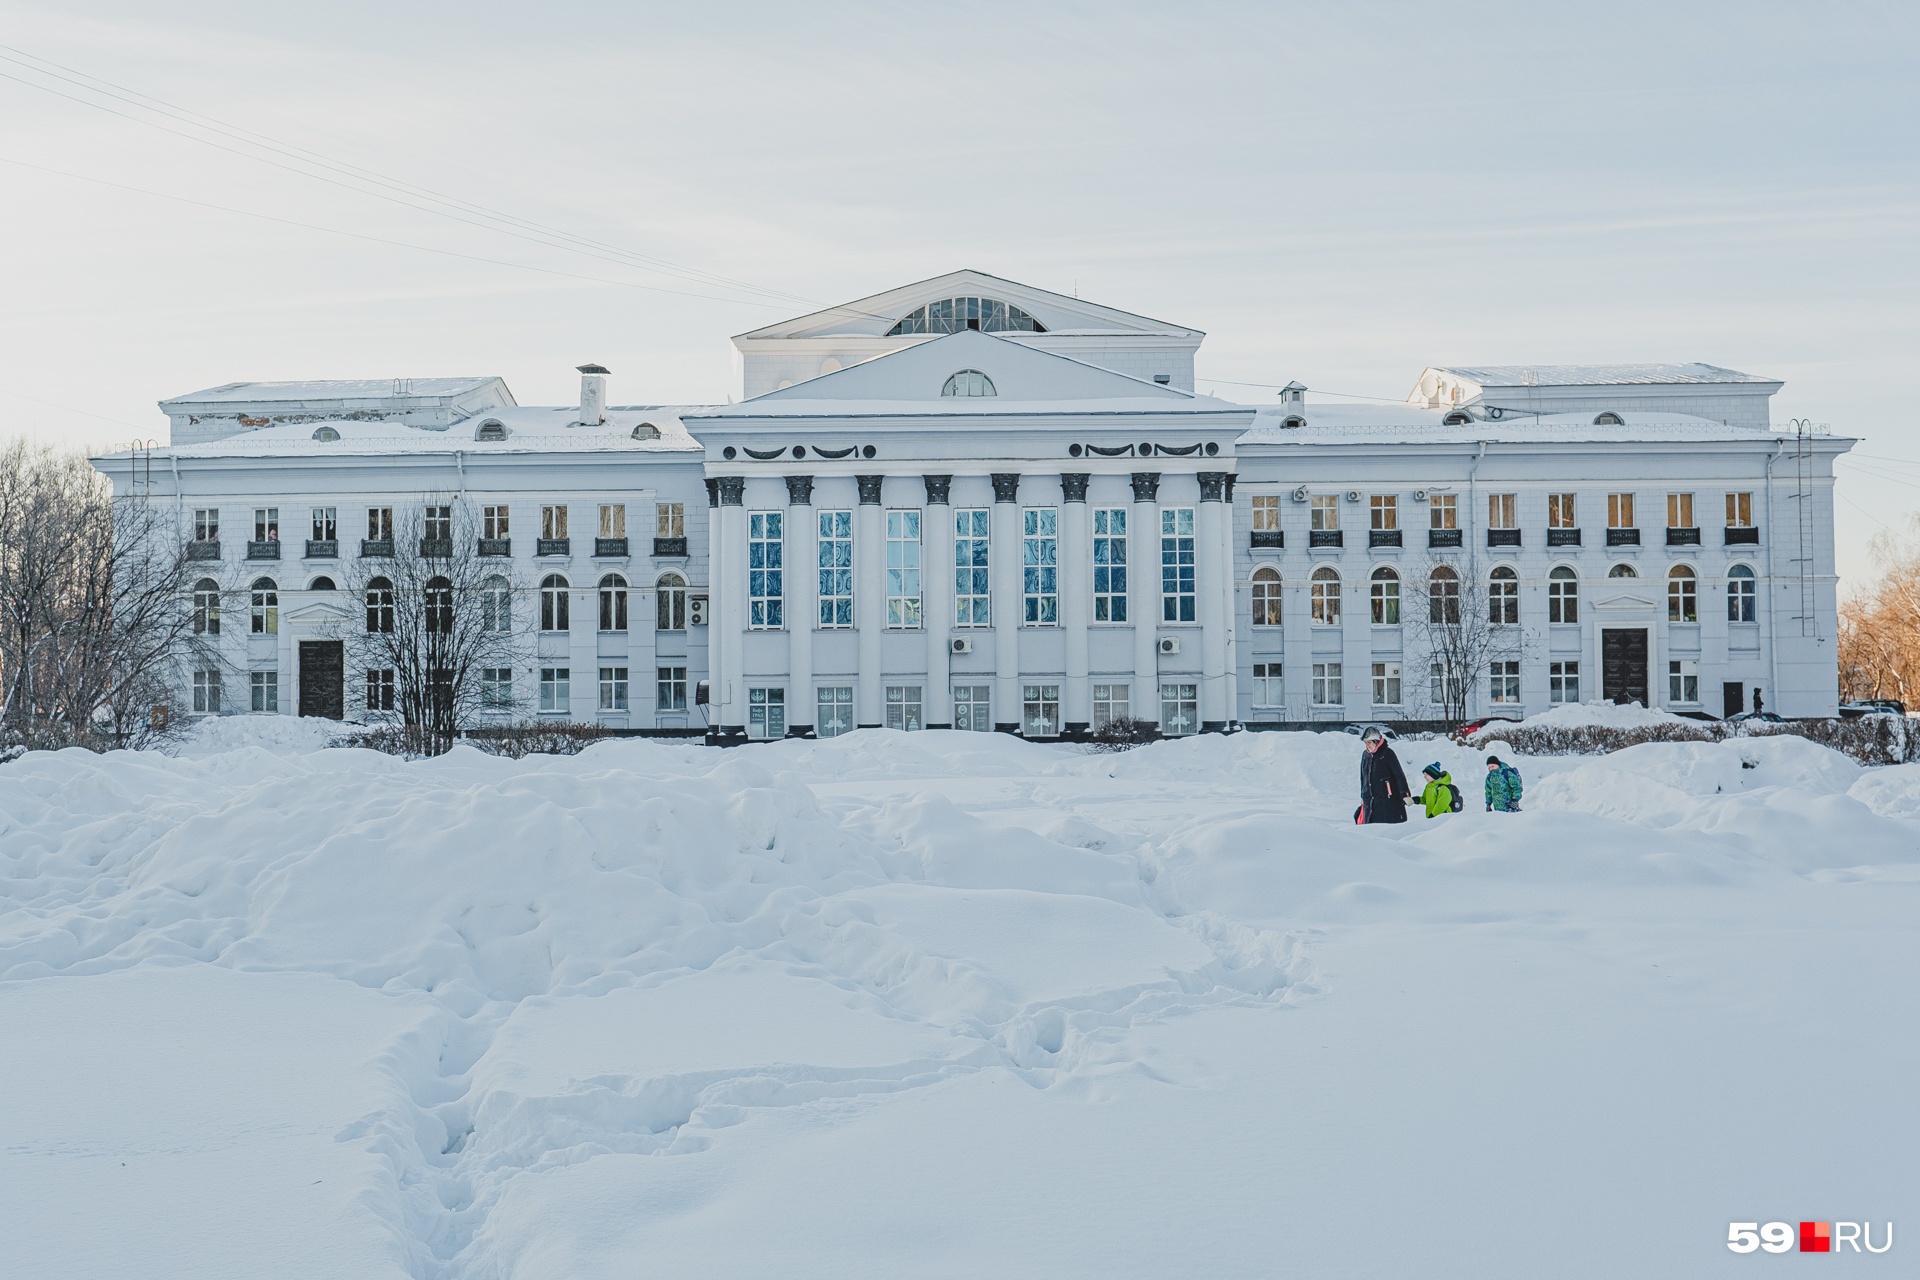 Сквер у ДК Ленина сейчас завален снегом